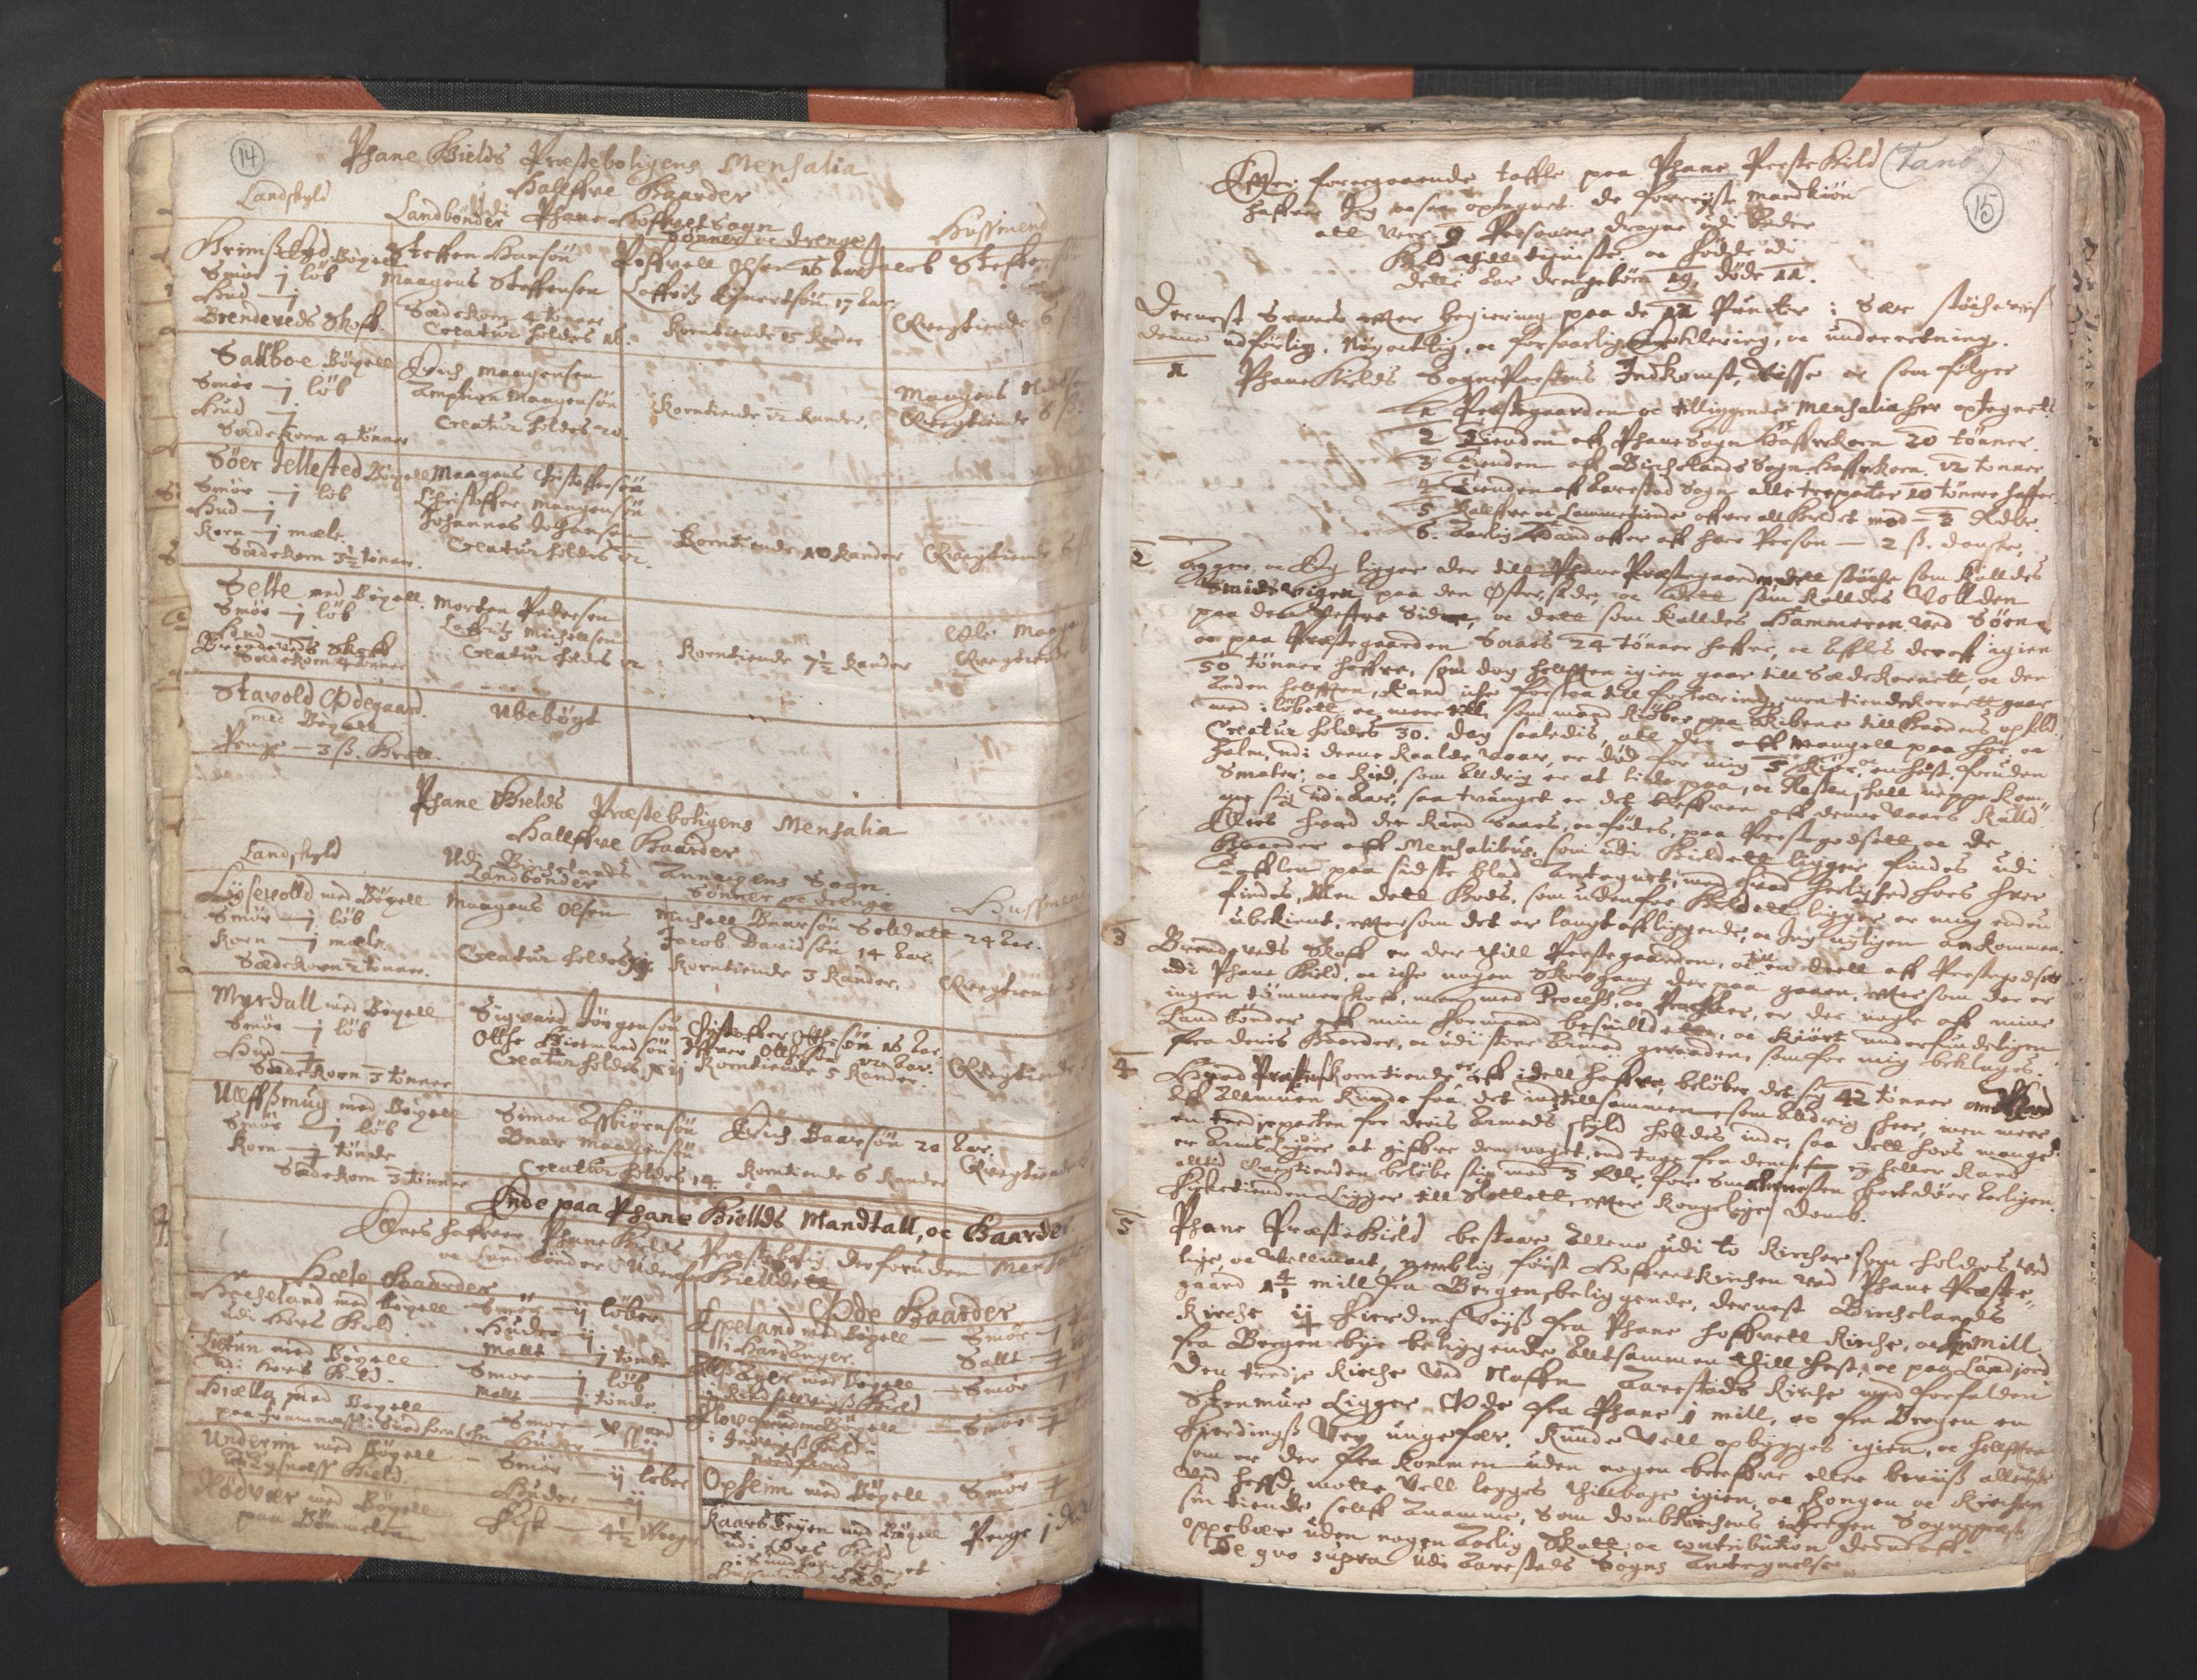 RA, Vicar's Census 1664-1666, no. 22: Nordhordland deanery, 1664-1666, p. 14-15